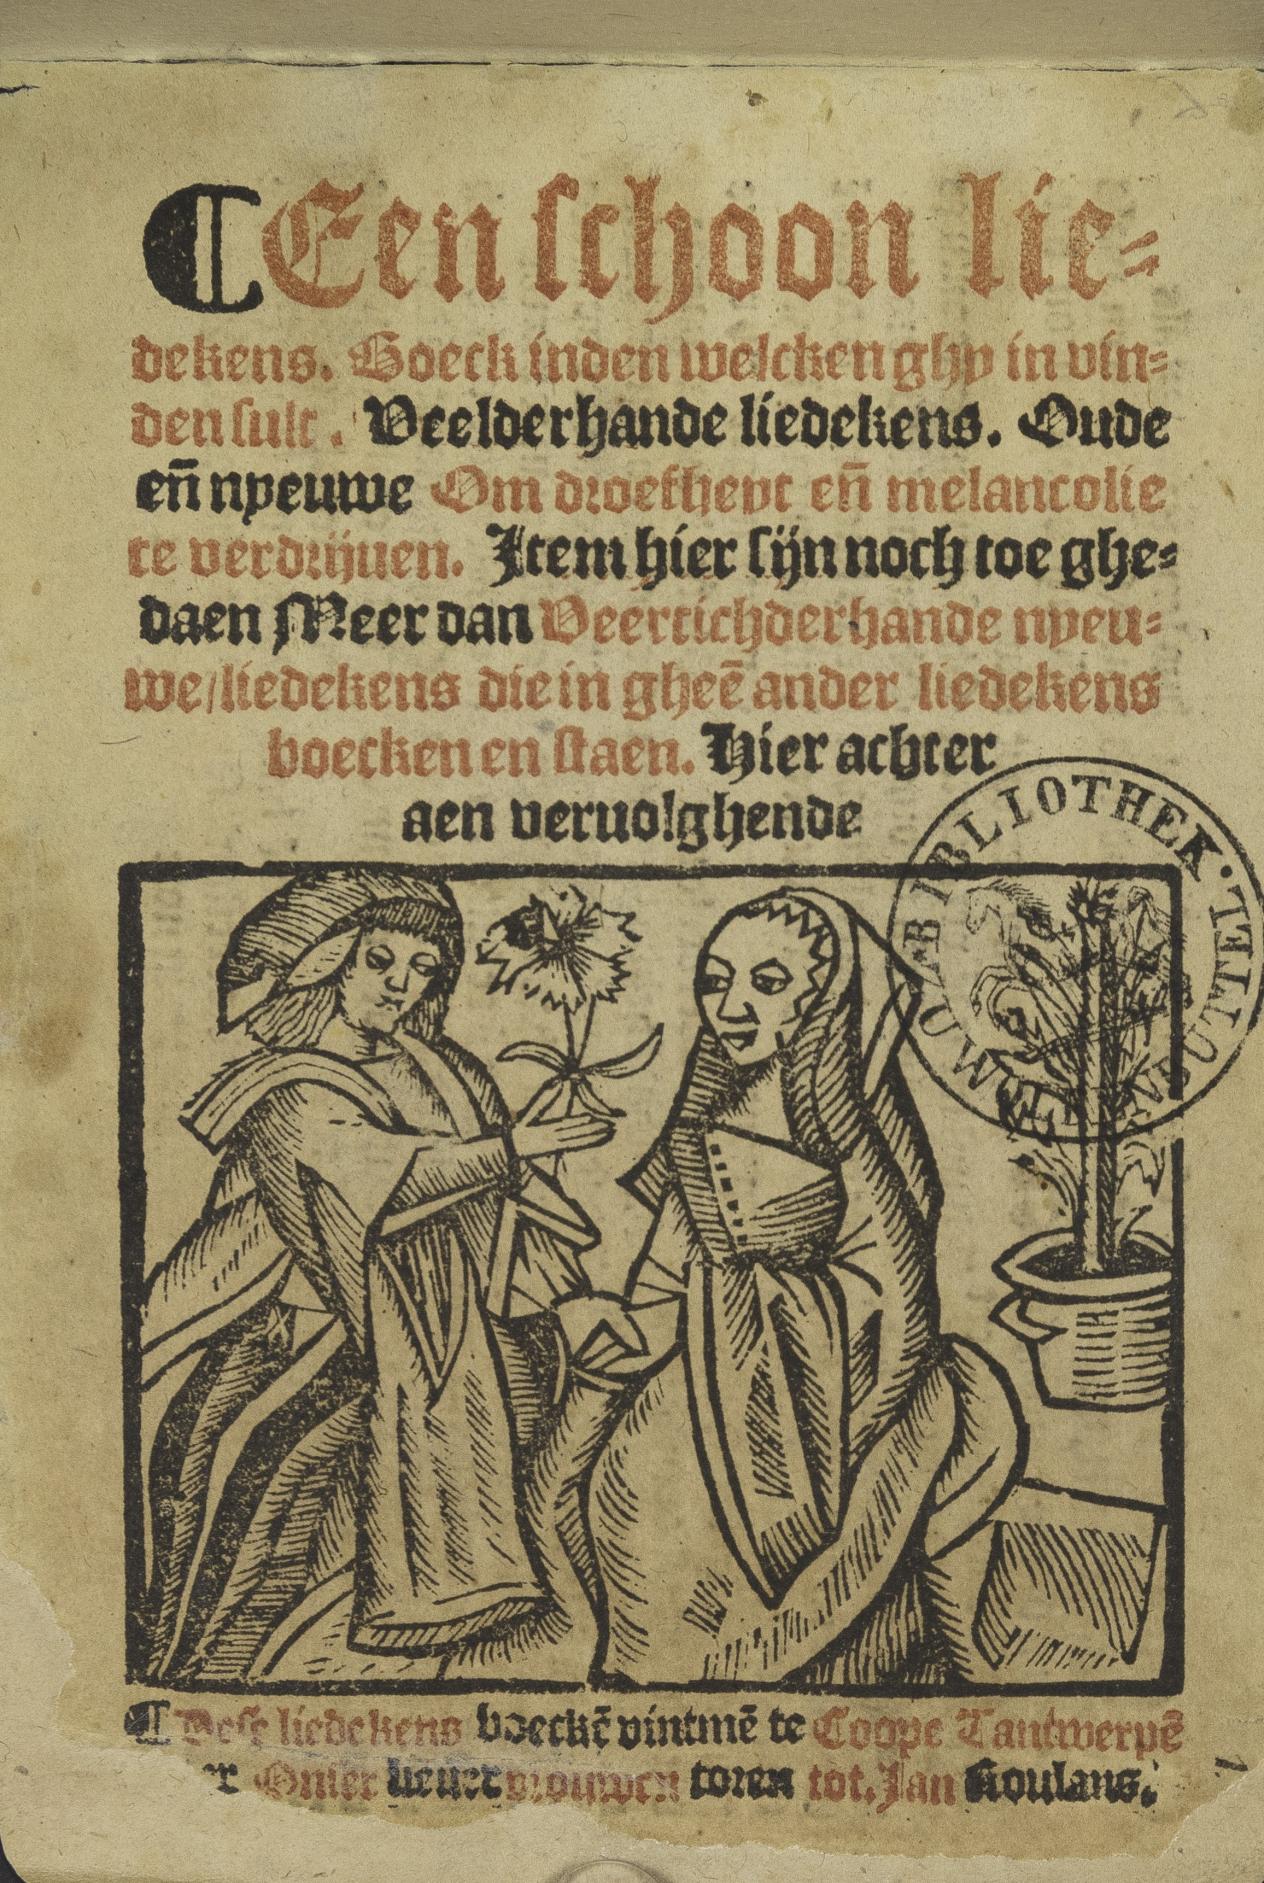 Geïllustreerde bladzijde van het Oud Antwerps Liedboek